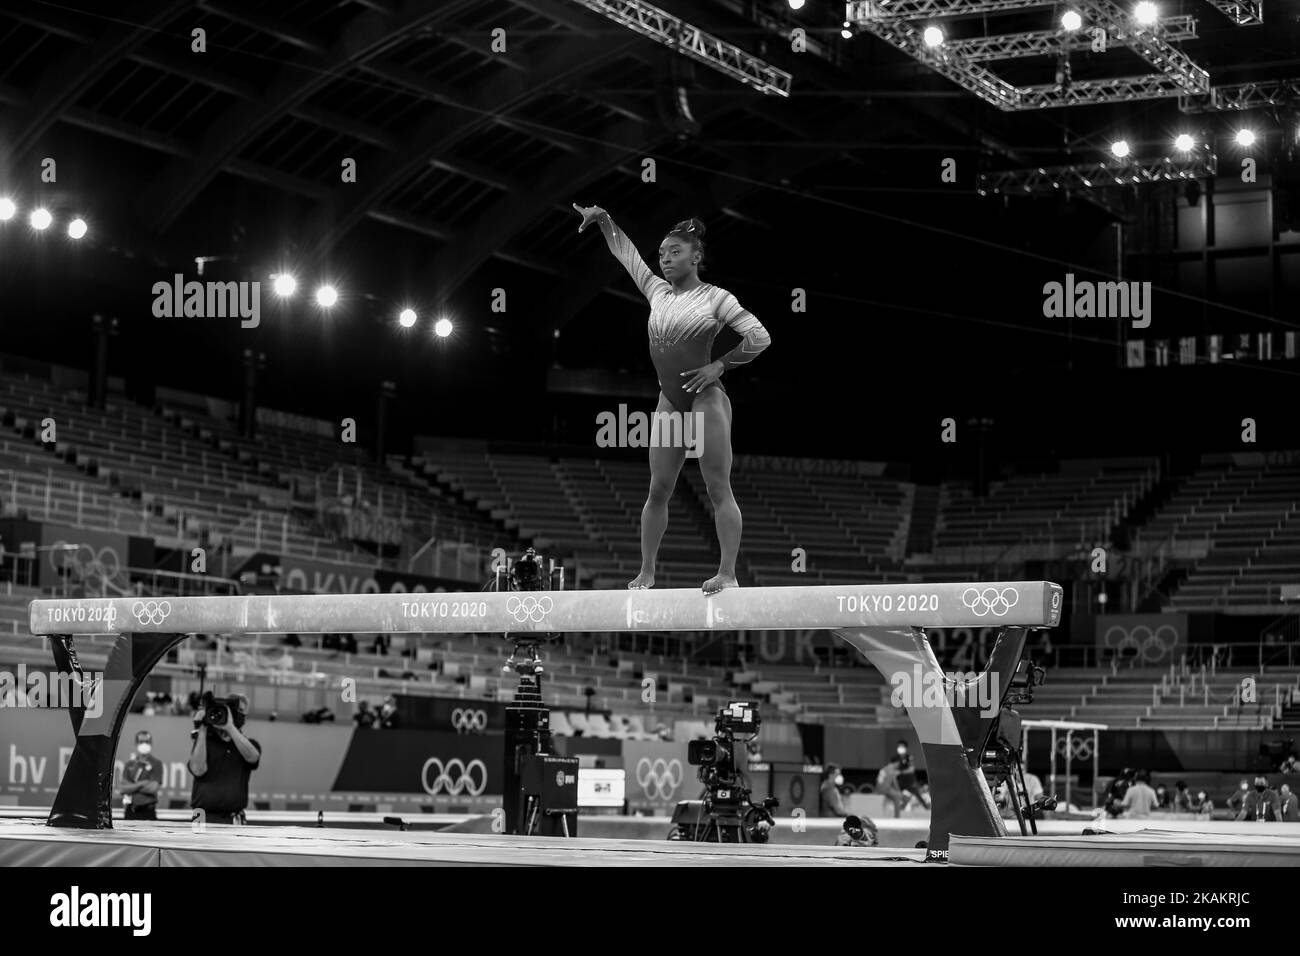 03rd AOÛT 2021 - TOKYO, JAPON: Simone BILES des États-Unis se produit au rayon de l'équilibre des femmes lors des finales des appareils de gymnastique artistique aux Jeux Olympiques de Tokyo 2020 (photo de Mickael Chavet/RX) Banque D'Images